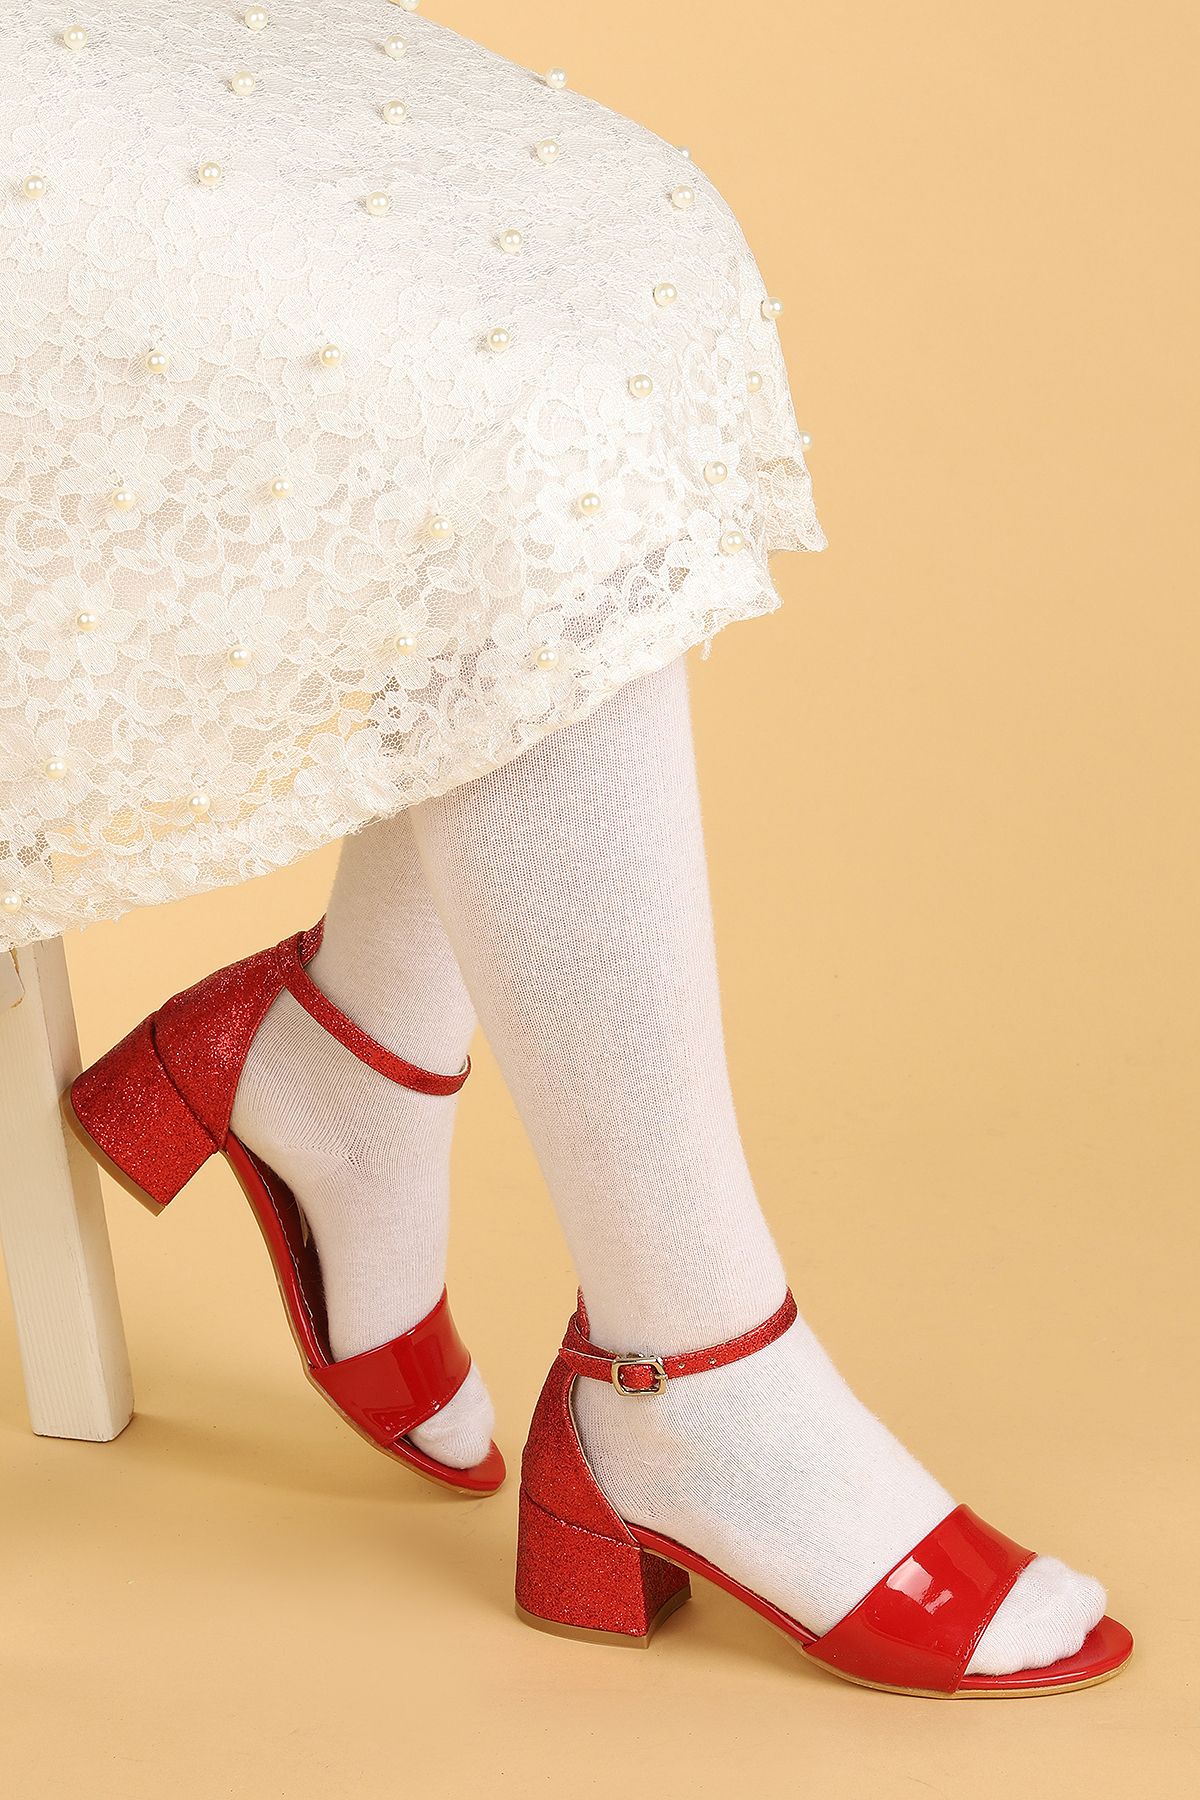 Kiko Kids 768 Ayna Kum Günlük Kız Çocuk 3 Cm Topuklu Sandalet Ayakkabı